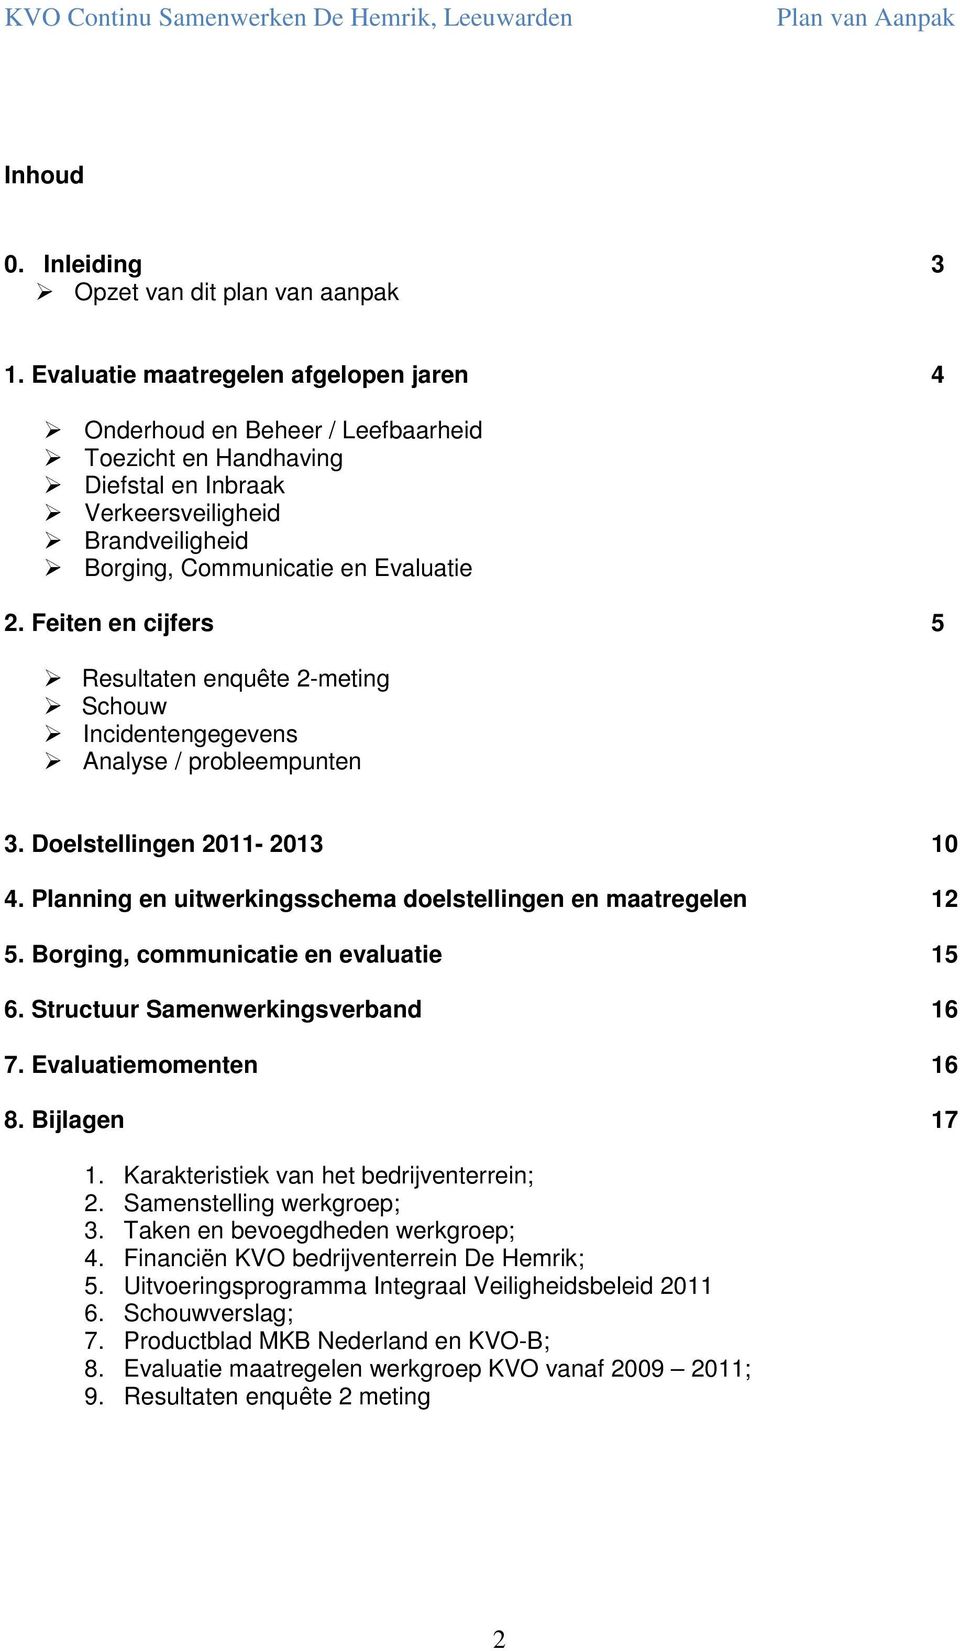 Feiten en cijfers 5 Resultaten enquête 2-meting Schouw Incidentengegevens Analyse / probleempunten 3. Doelstellingen 2011-2013 10 4. Planning en uitwerkingsschema doelstellingen en maatregelen 12 5.